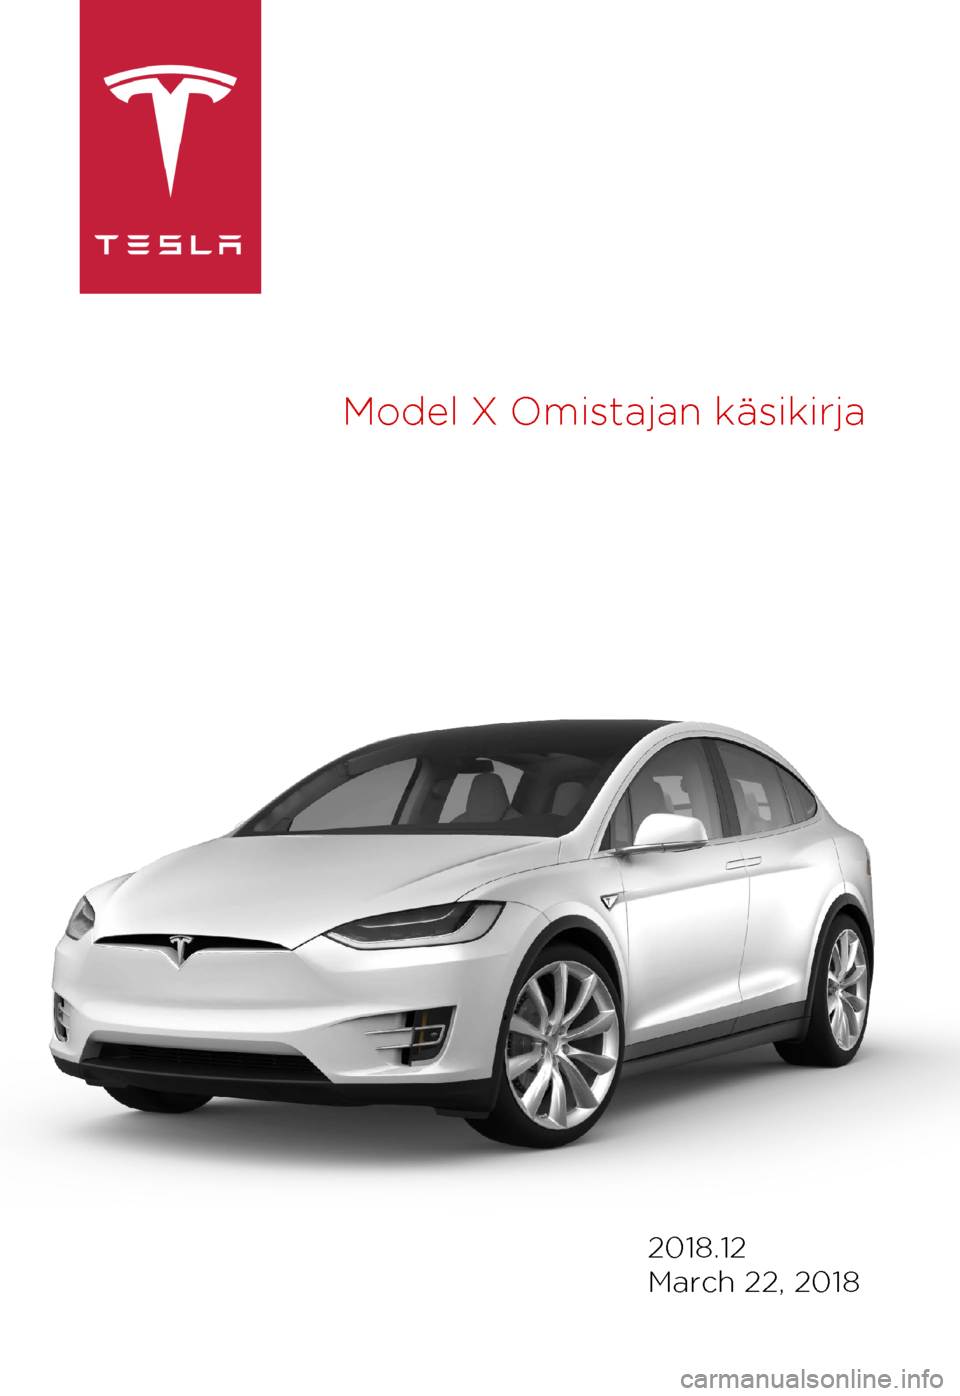 TESLA MODEL X 2018  Omistajan käsikirja (in Finnish)  Model 
X Omistajan käsikirja 2018.12
March 22, 2018 